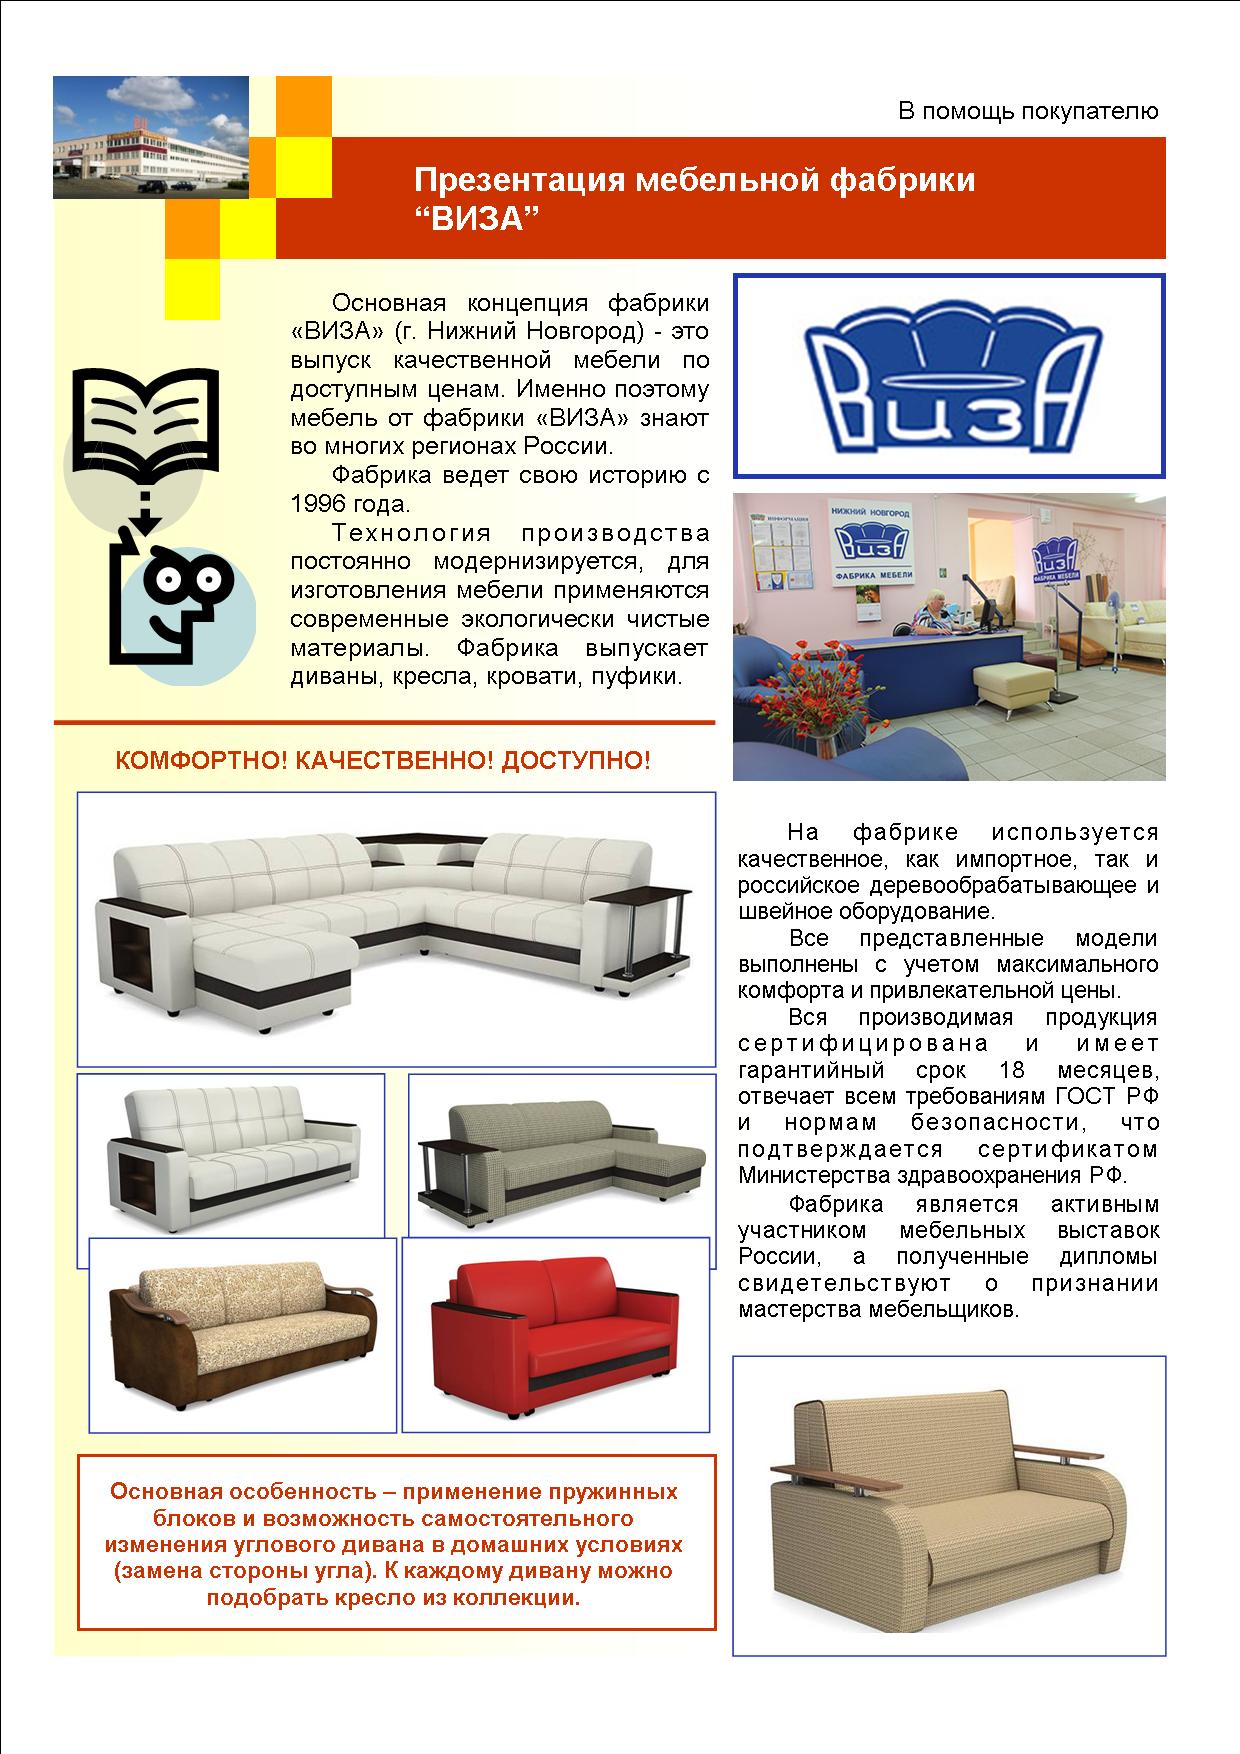 Фабрики по производству мебели в россии список